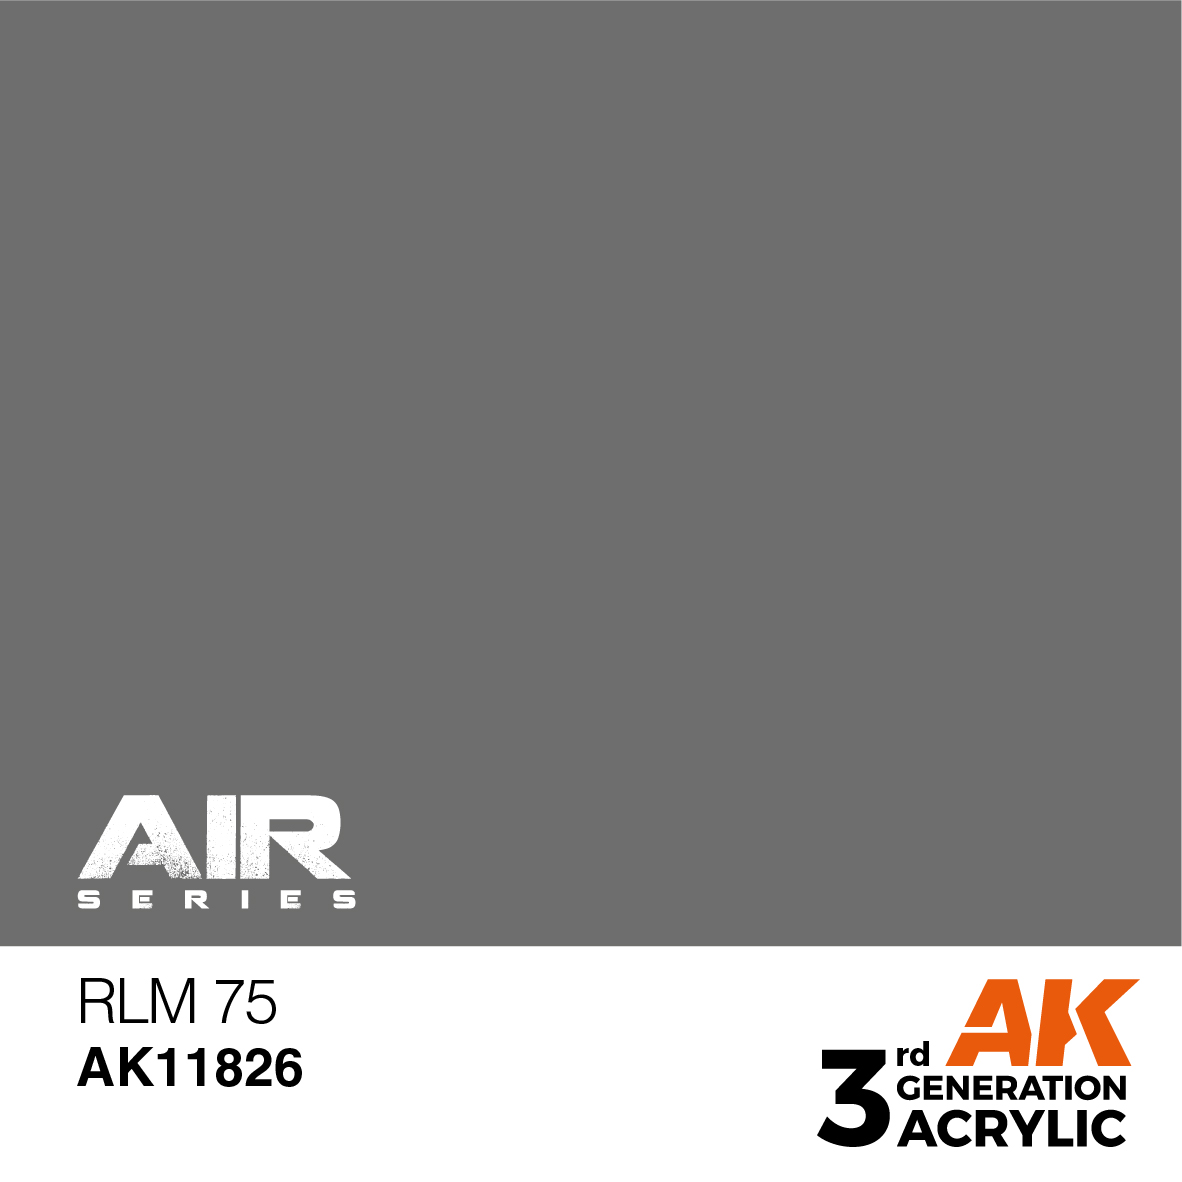 RLM 75 – AIR